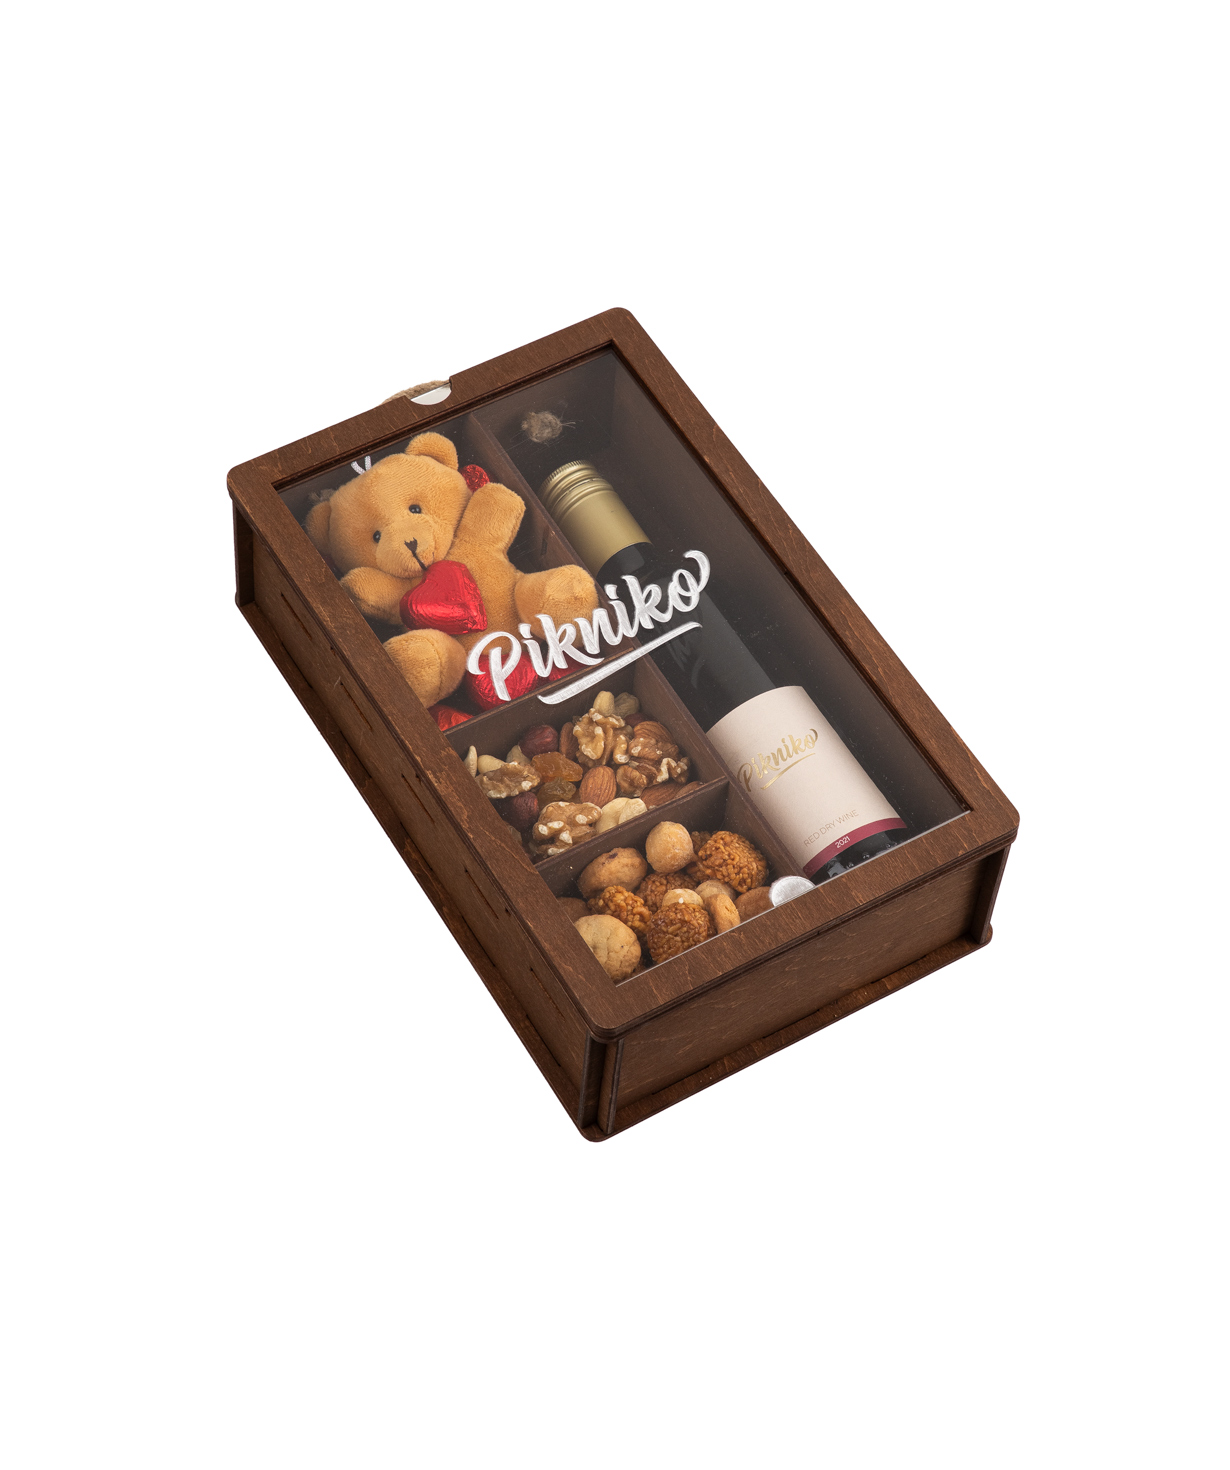 Подарочная коробка «Pikniko» с вином, сладостями и игрушкой №2